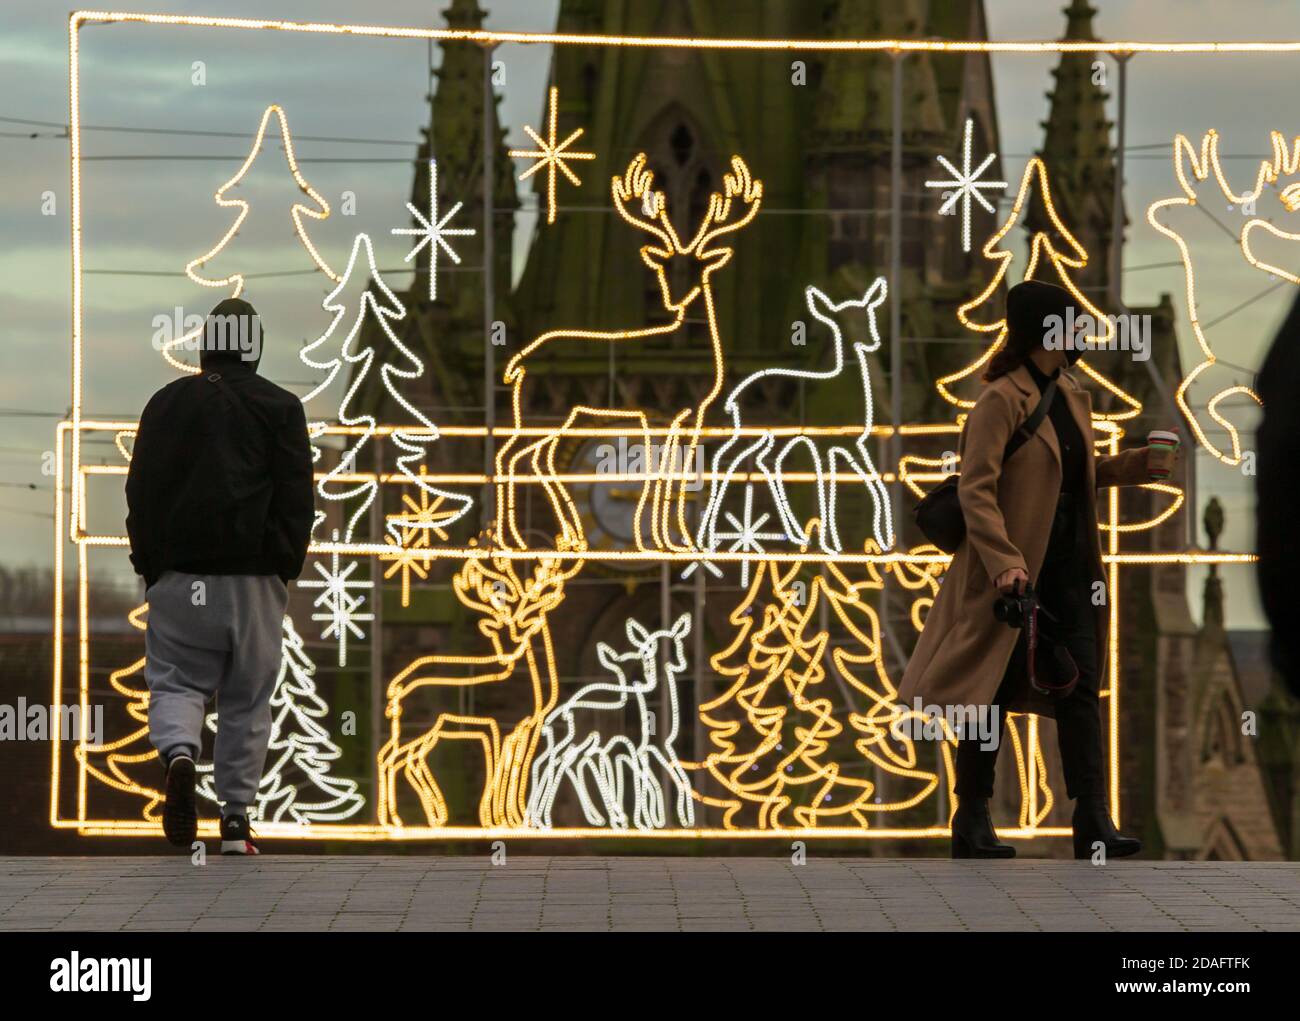 Weihnachtsdekorationen wurden von der Stierkampfarena im Stadtzentrum von Birmingham, Großbritannien, errichtet und die Menschen werden während der Sperre vorbei gehen gesehen Stockfoto